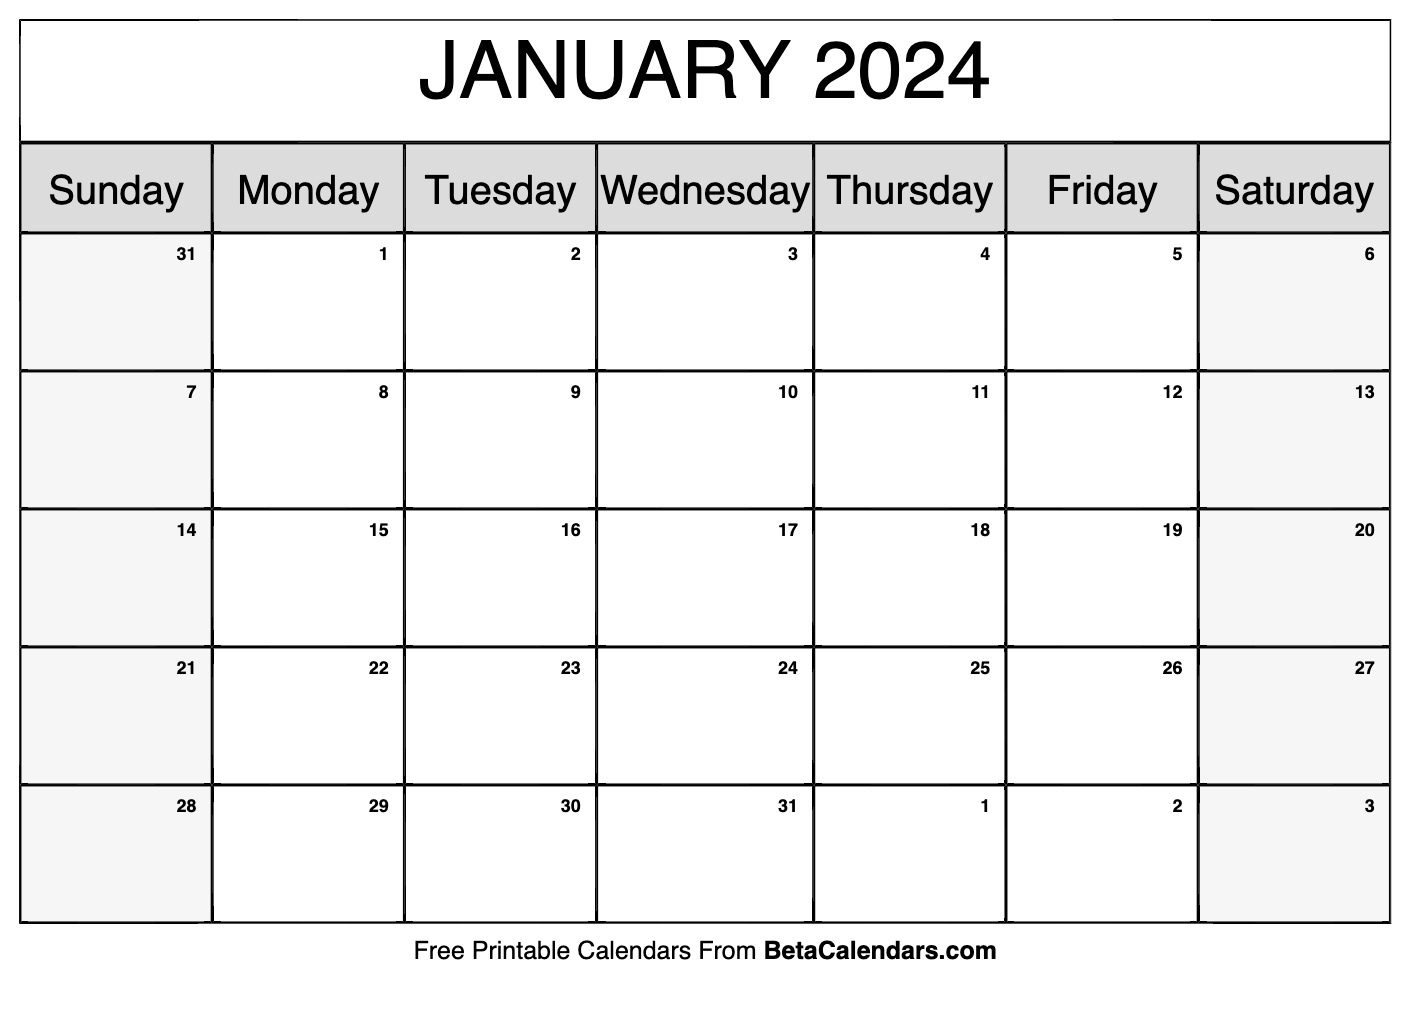 Free Printable January 2024 Calendar for Free Printable Baseball Calendar 2024